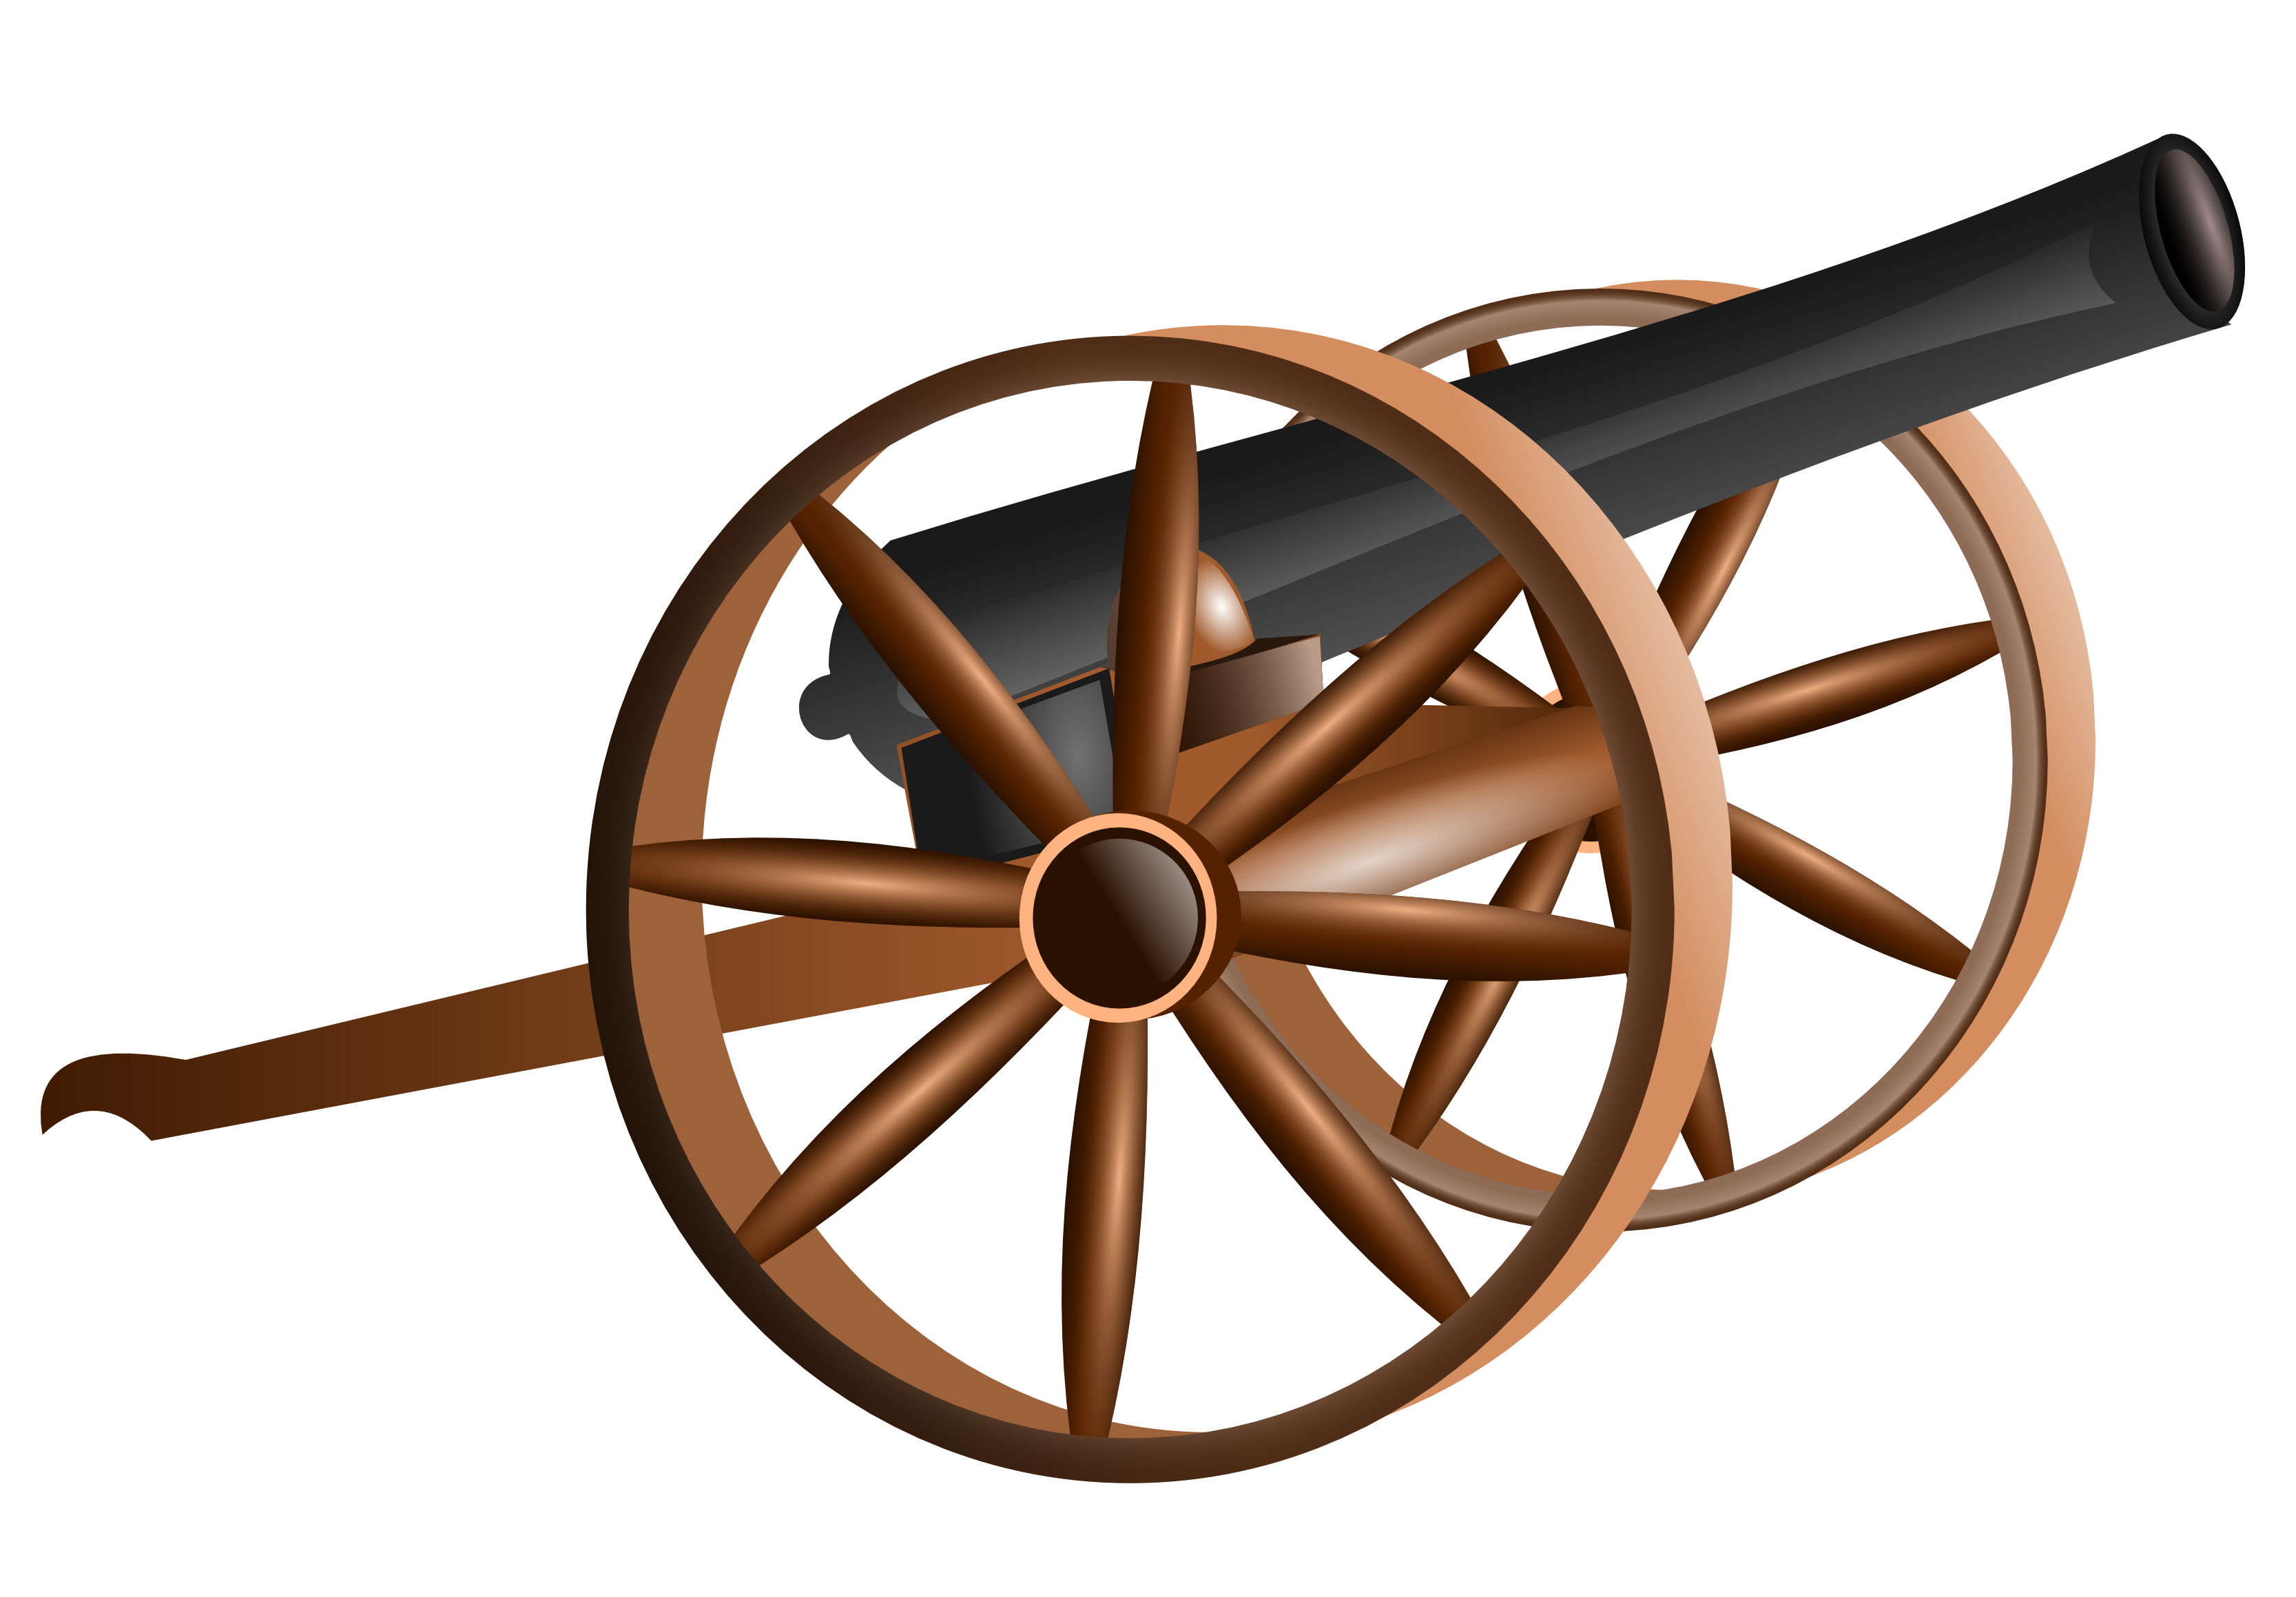 Cannon civil war cannon